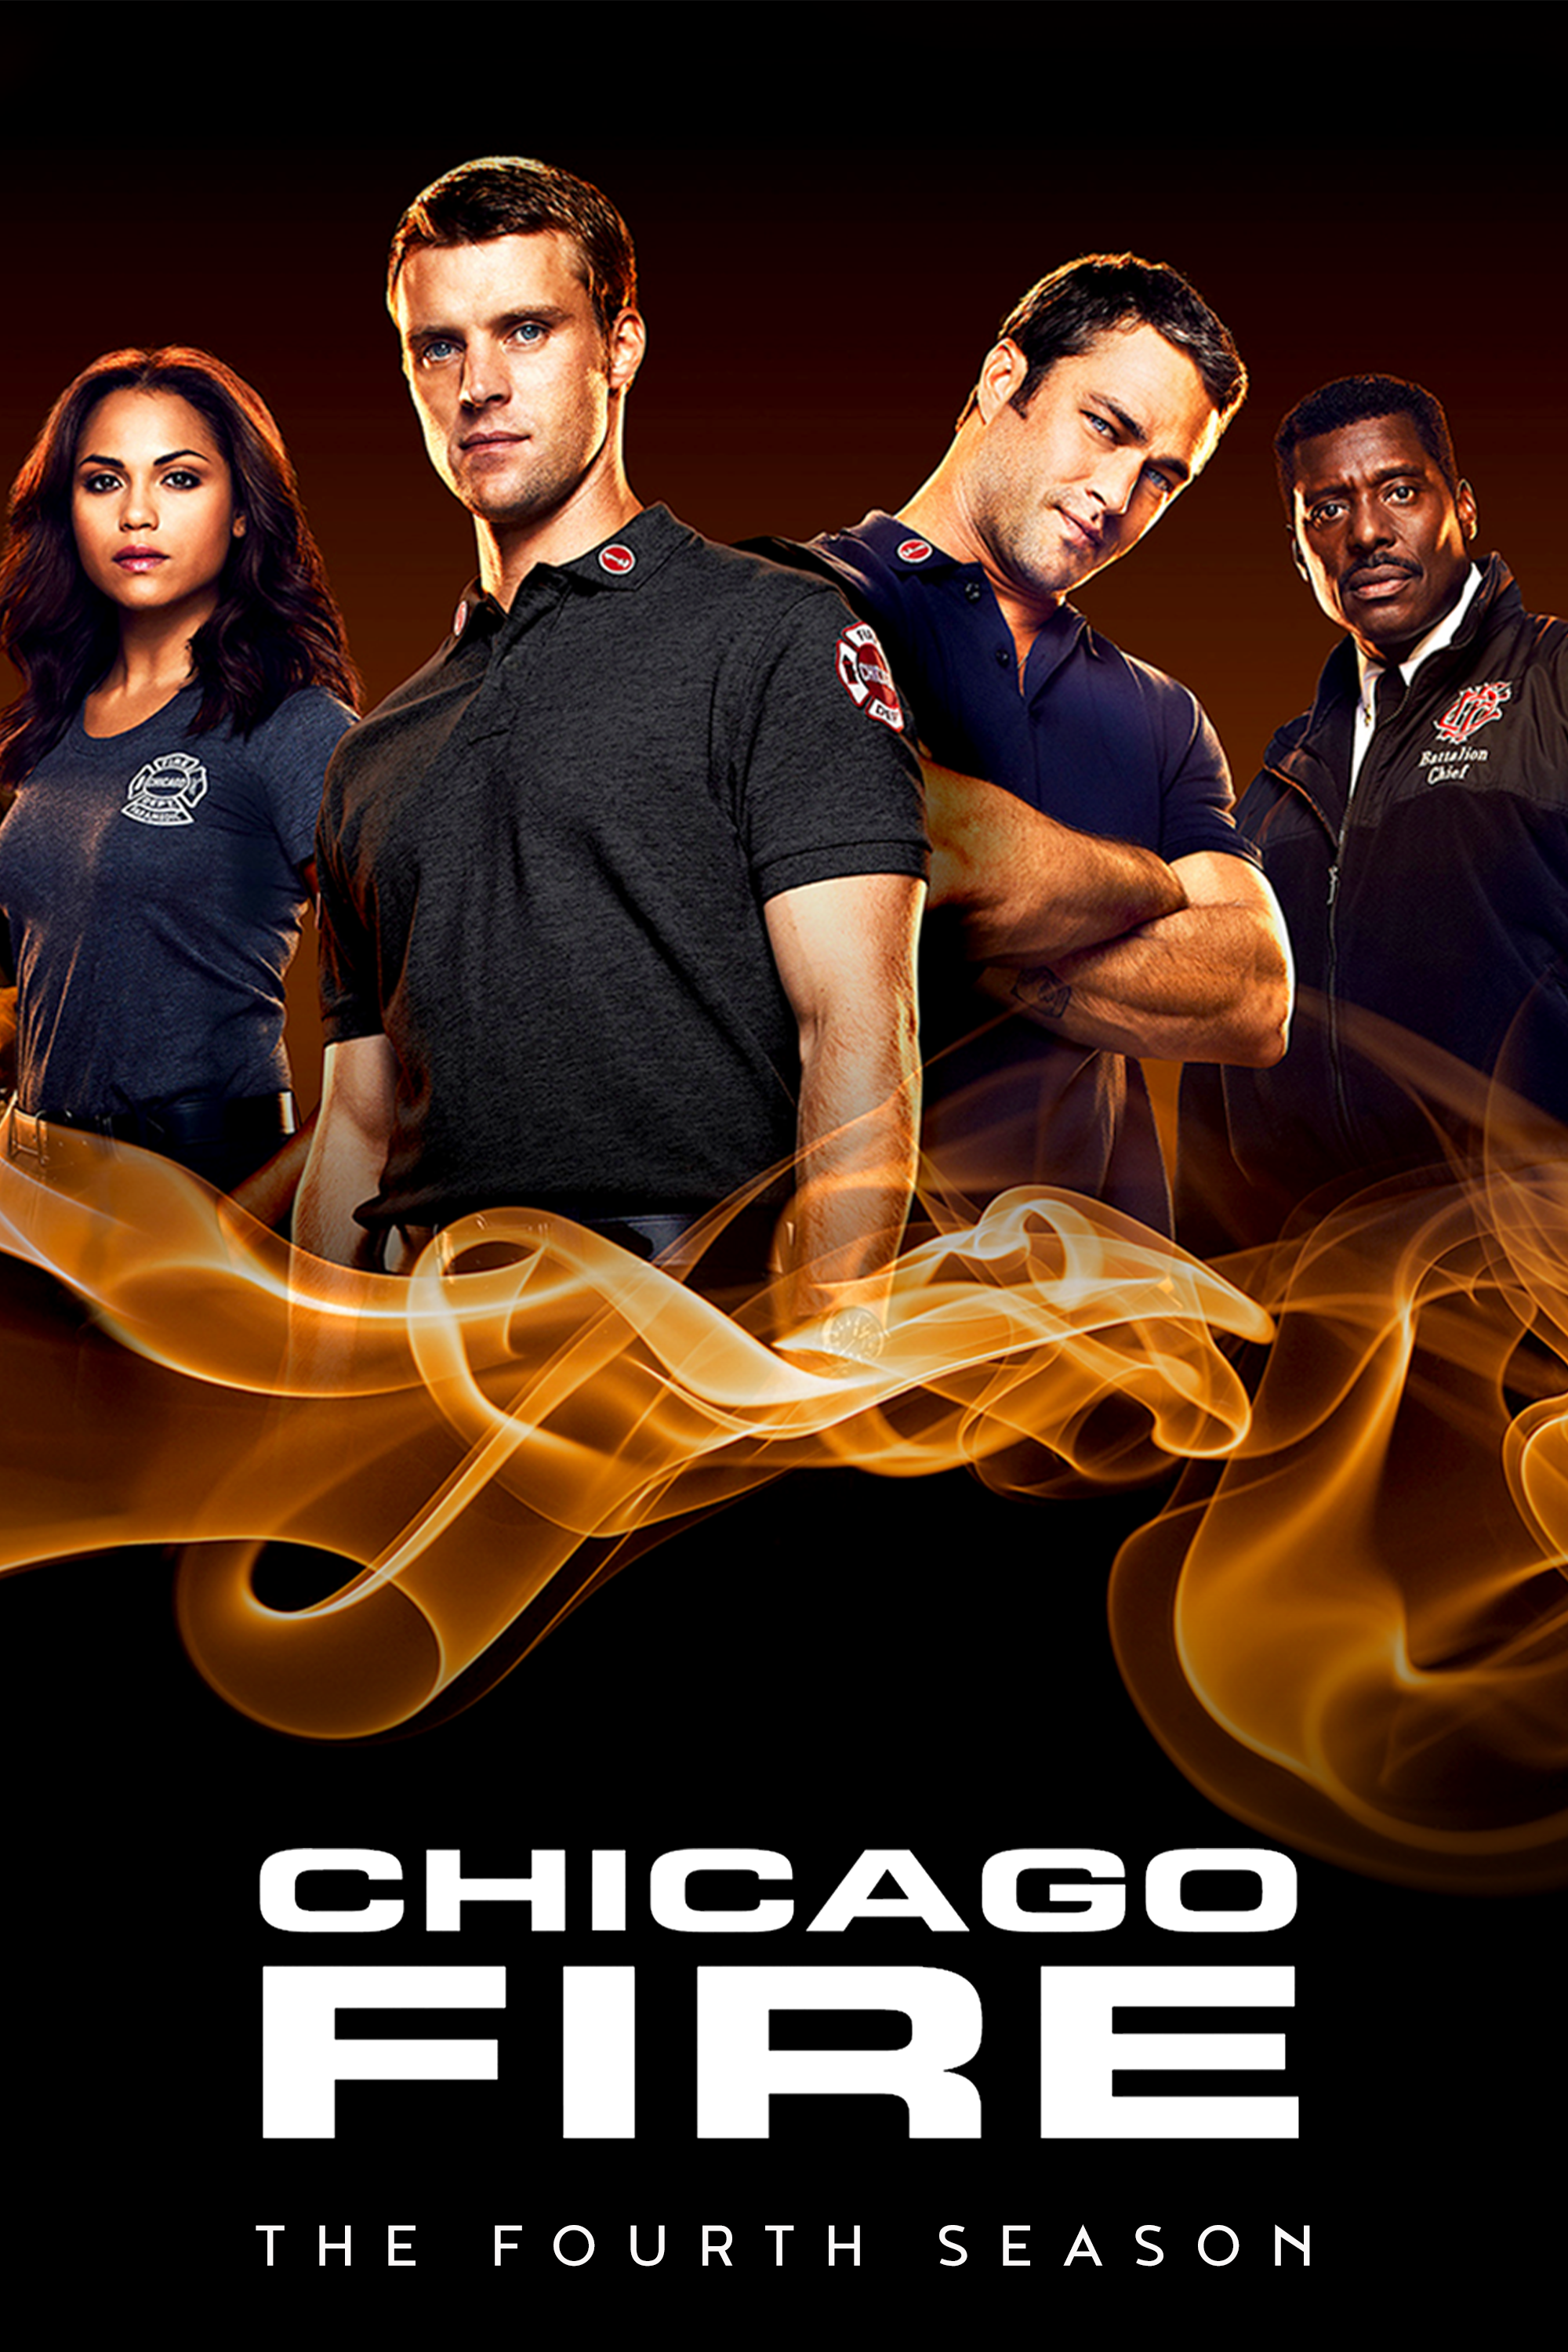 ดูหนังออนไลน์ฟรี Chicago Fire Season 4 EP.21 ชิคาโก้ ไฟร์ หน่วยดับเพลิงท้านรก ซีซั่นที่ 4 ตอนที่ 21